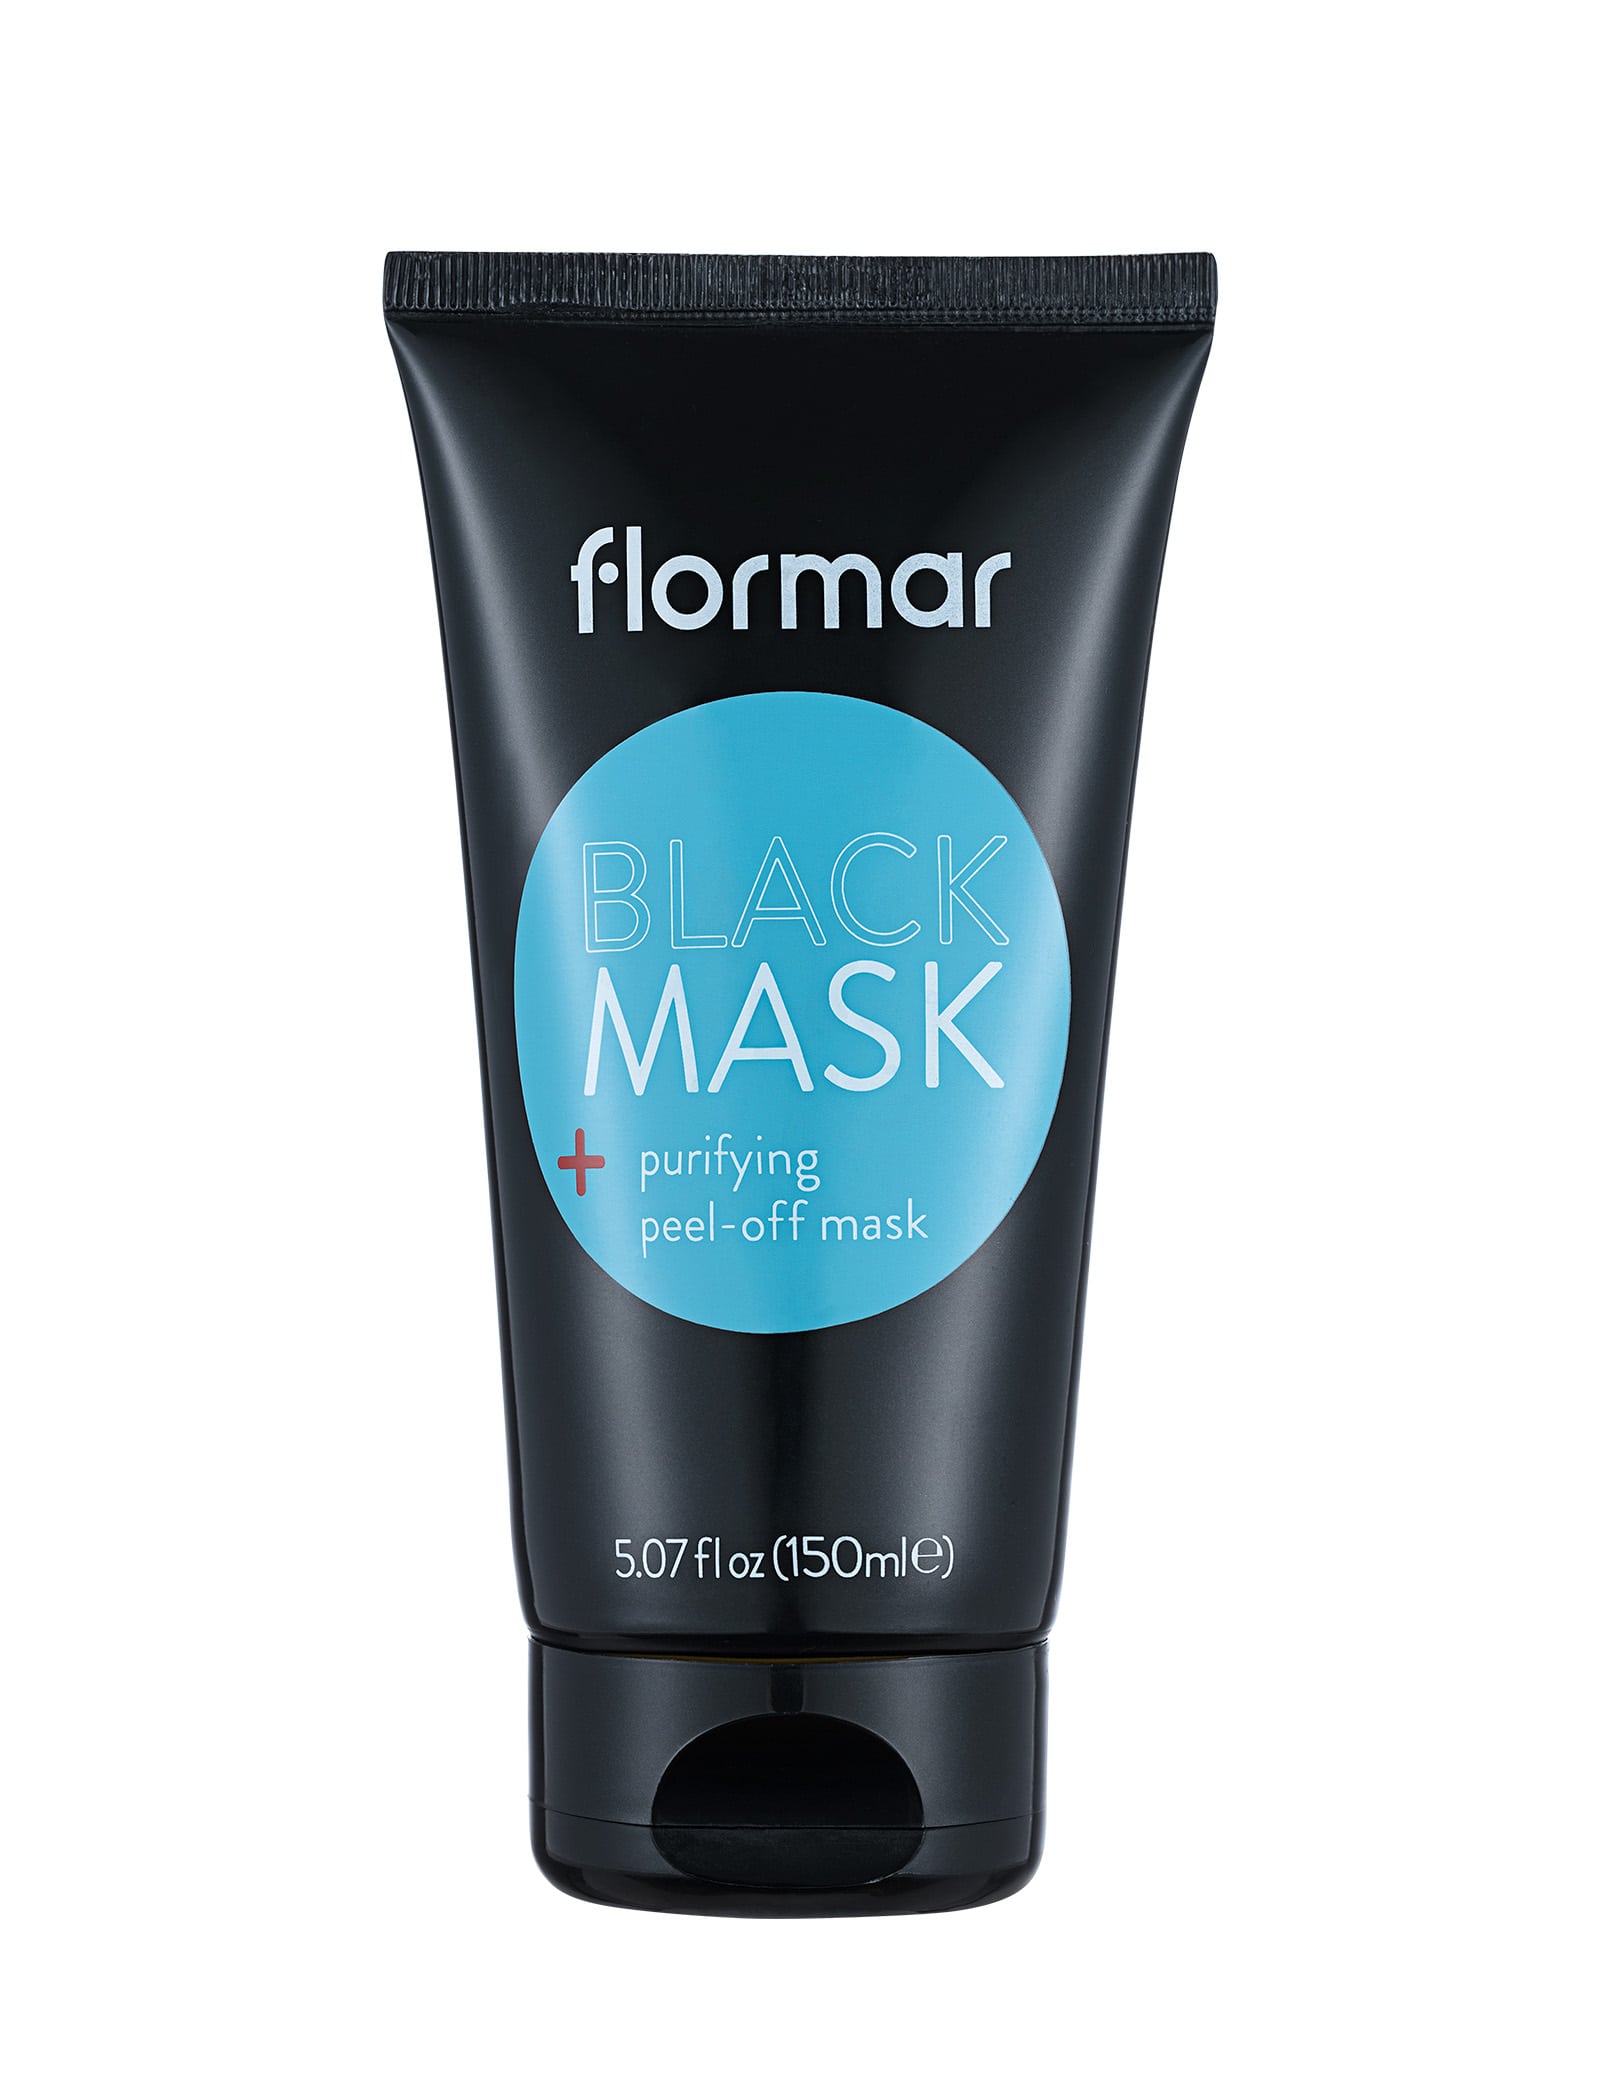 Flormar Black Mask